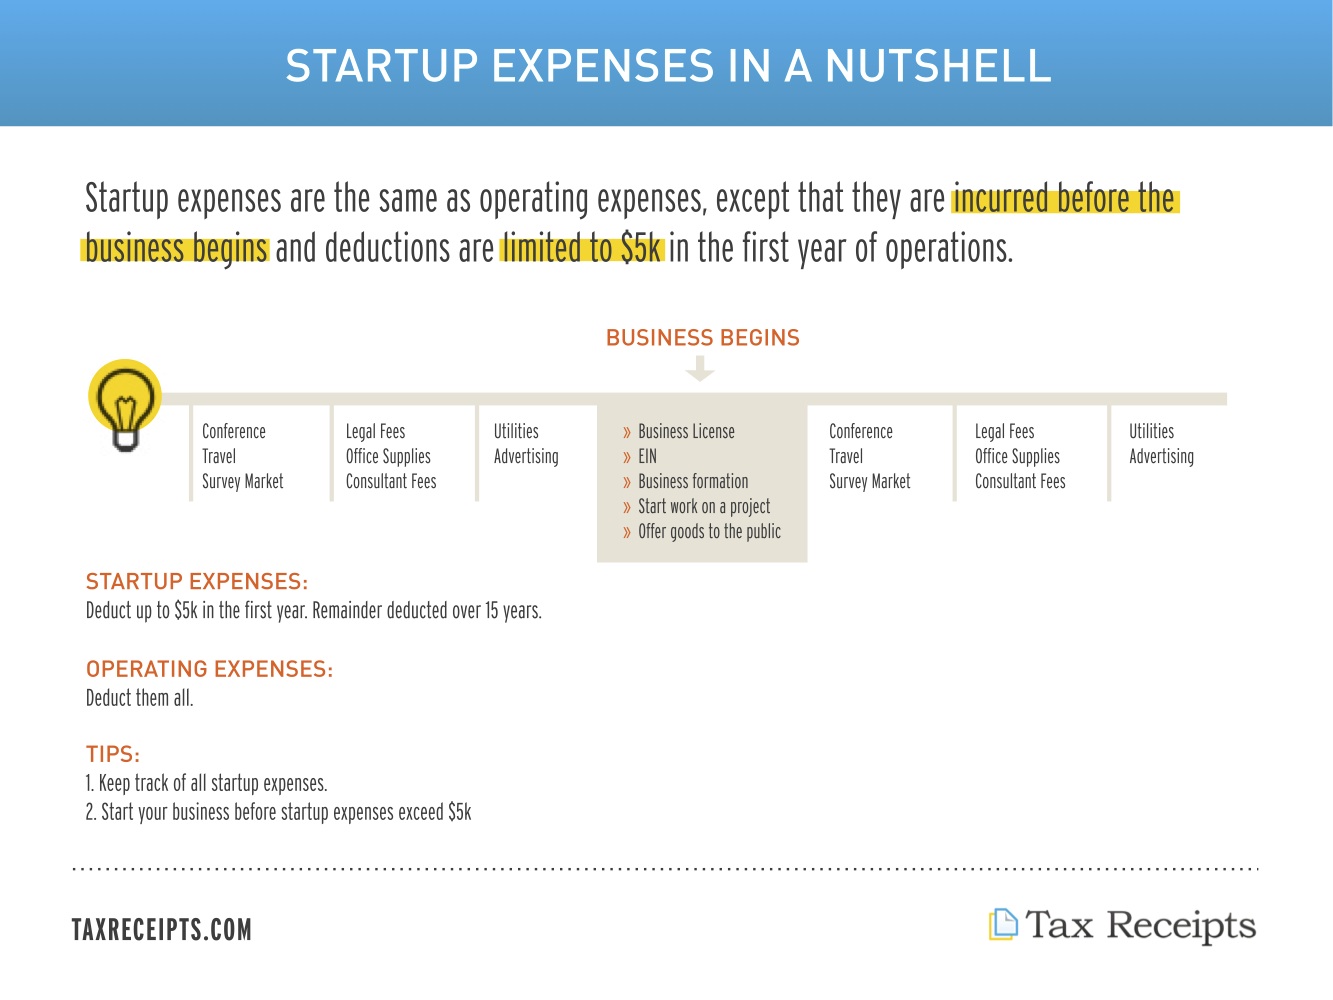 hsa qualified expenses versus tax deductible expenses